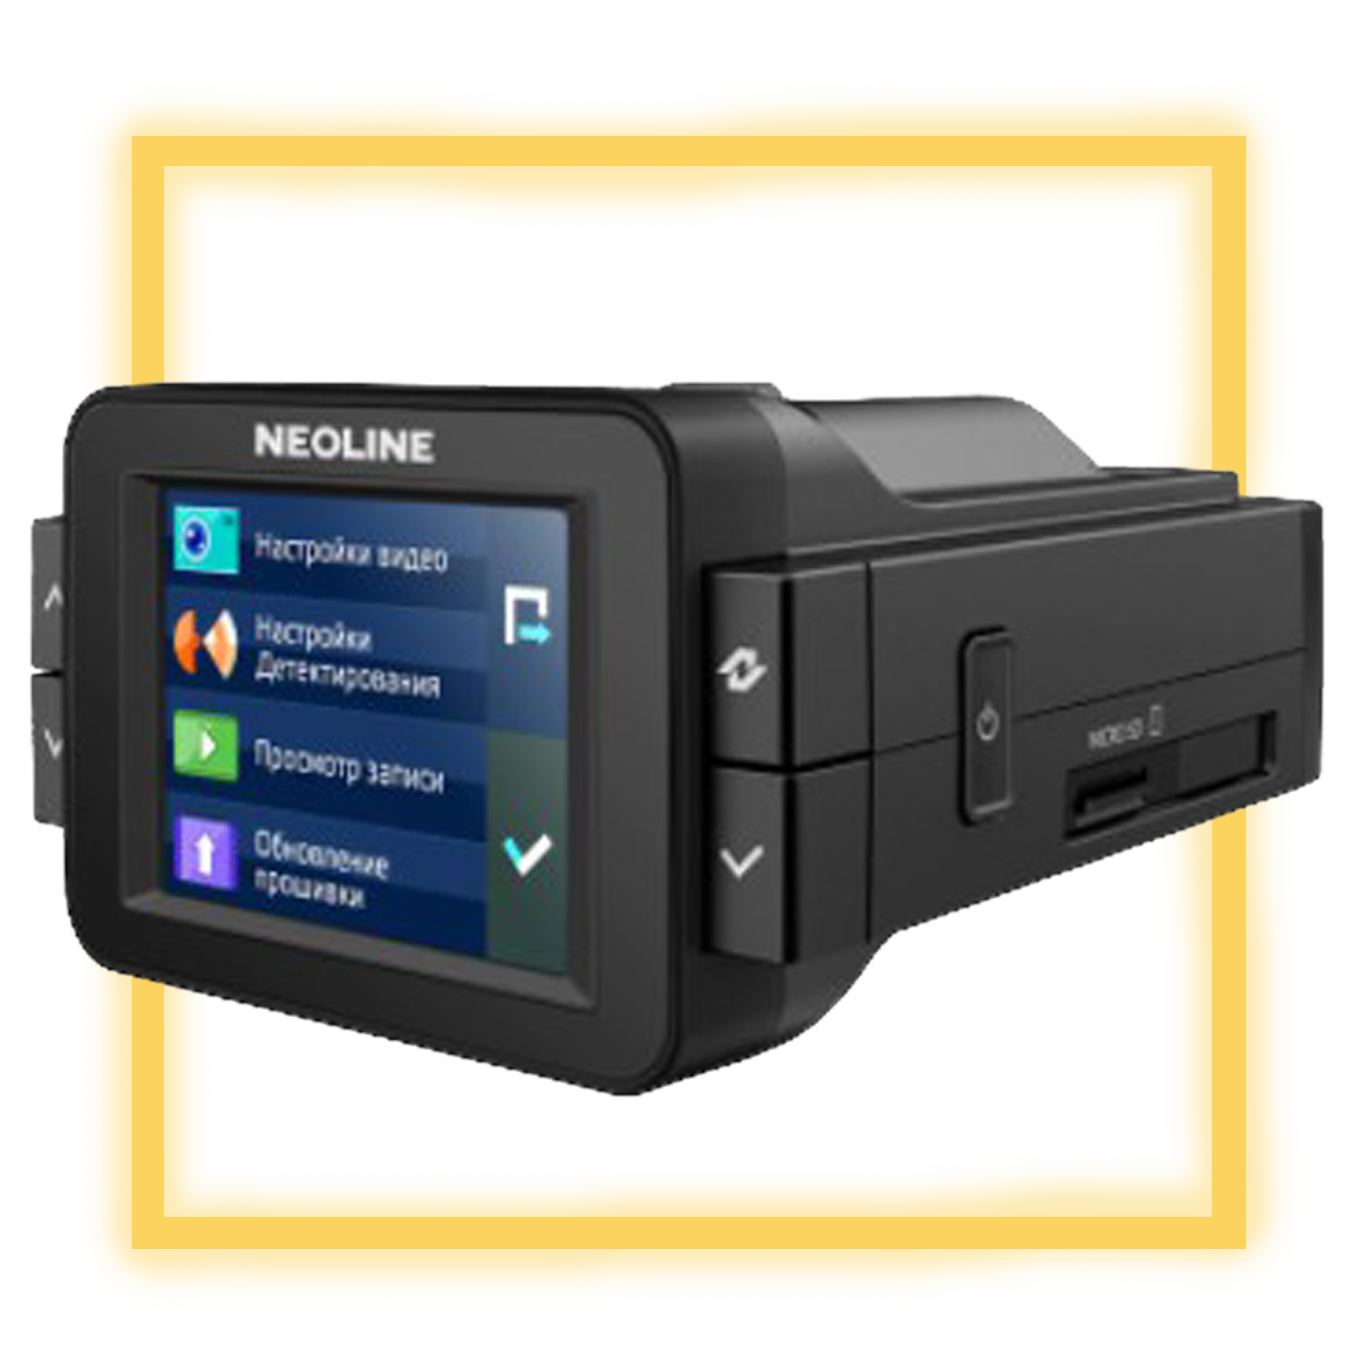 Отзывы на neoline x-cop 9000c от владельцев видеорегистратора с радар-детектором